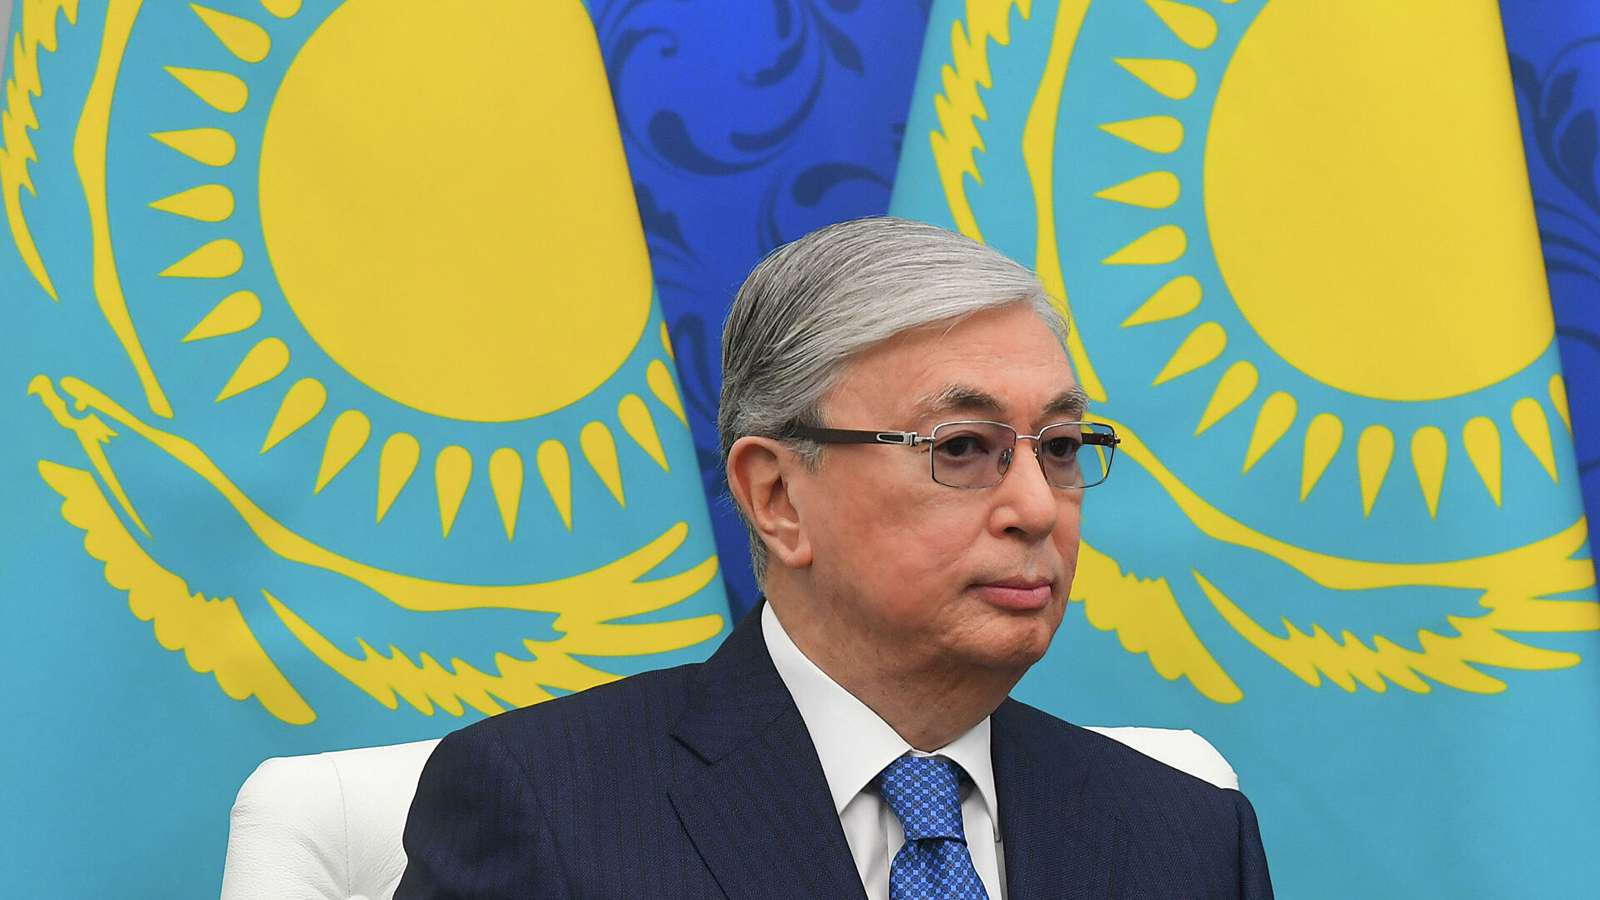 Внеочередные выборы президента Казахстана пройдут 20 ноября